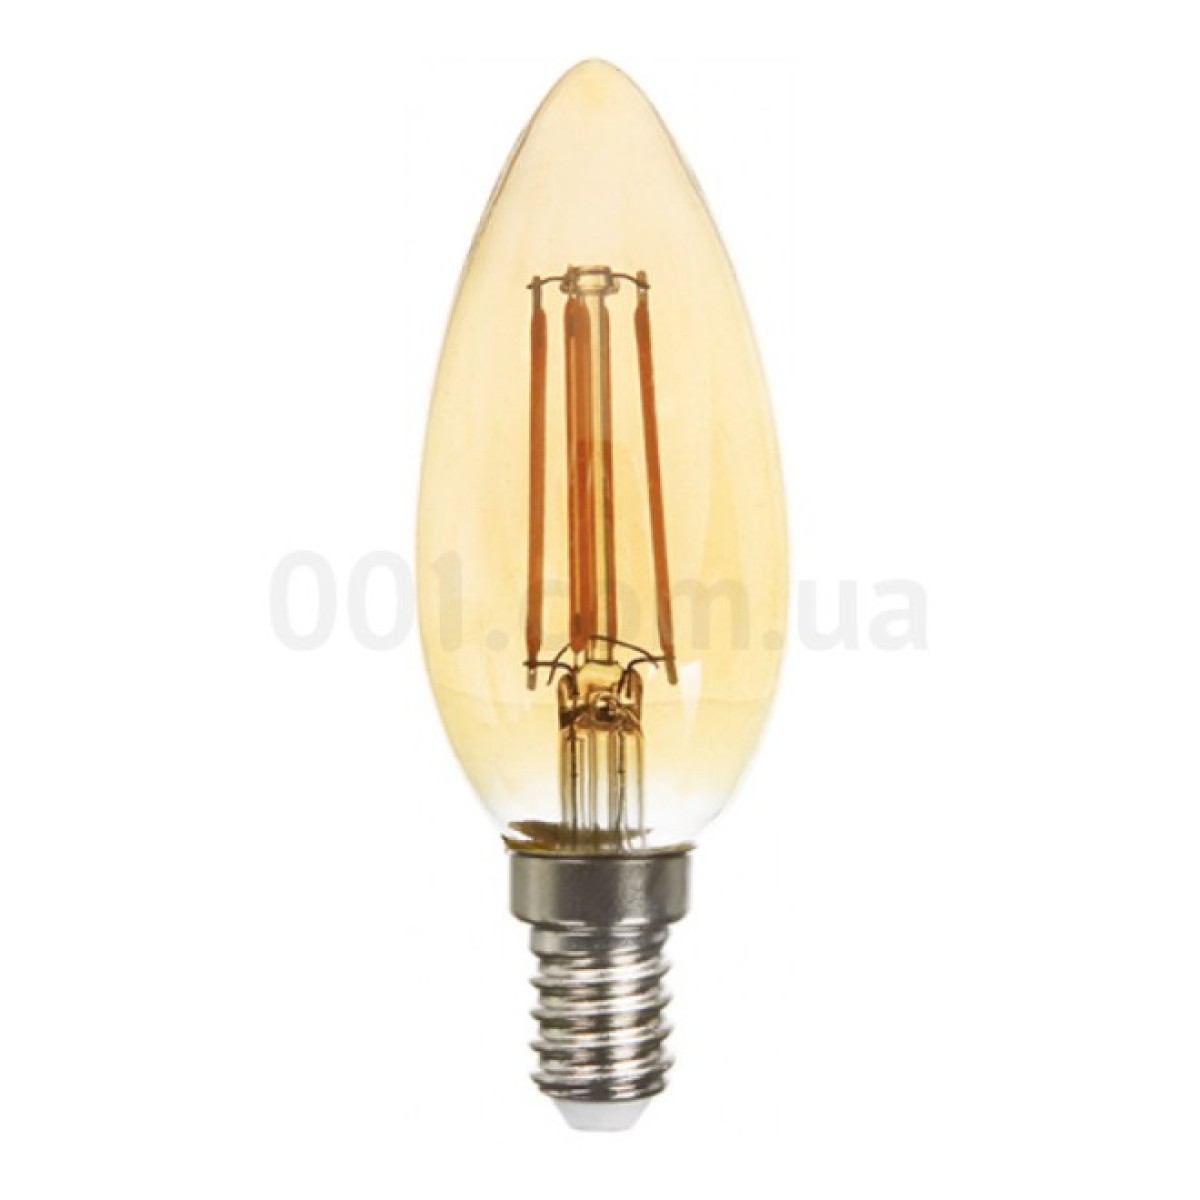 Світлодіодна лампа LB-158 C37 (свічка) філамент золото 6Вт 2200K E14, Feron 98_98.jpg